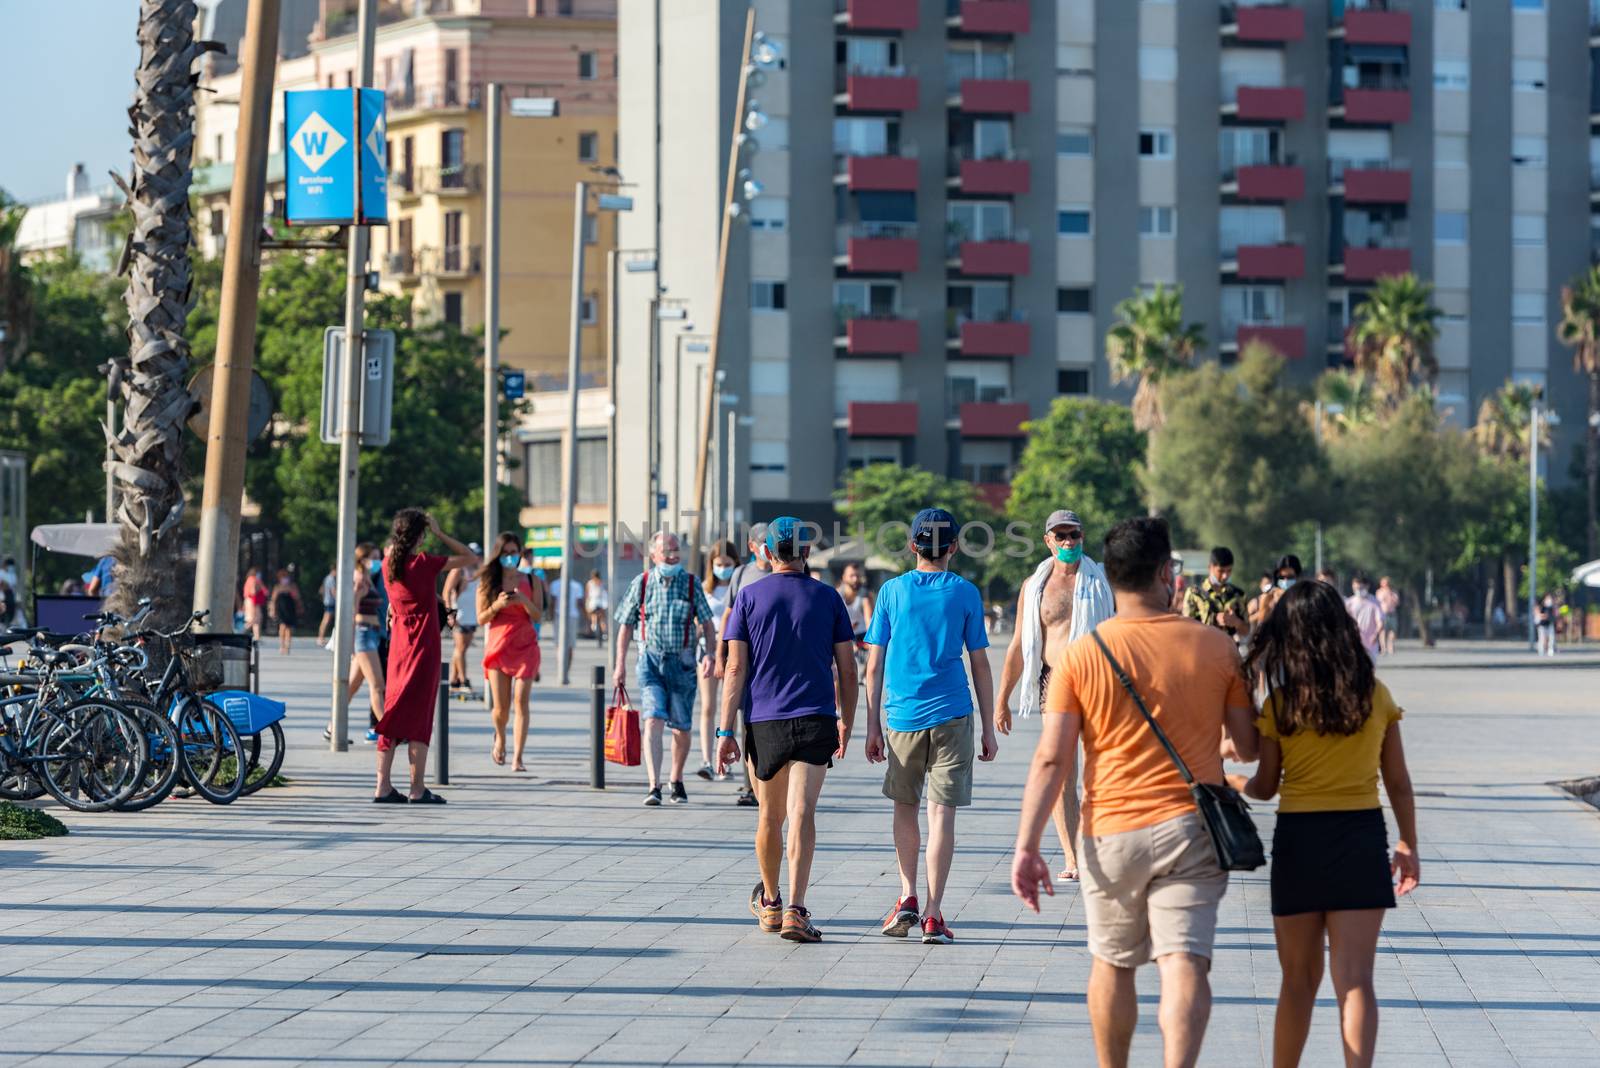 Barcelona, Spain - July 28 2020:  People walking through empty streets after COVID 19 LA Barceloneta in Barcelona, Spain.